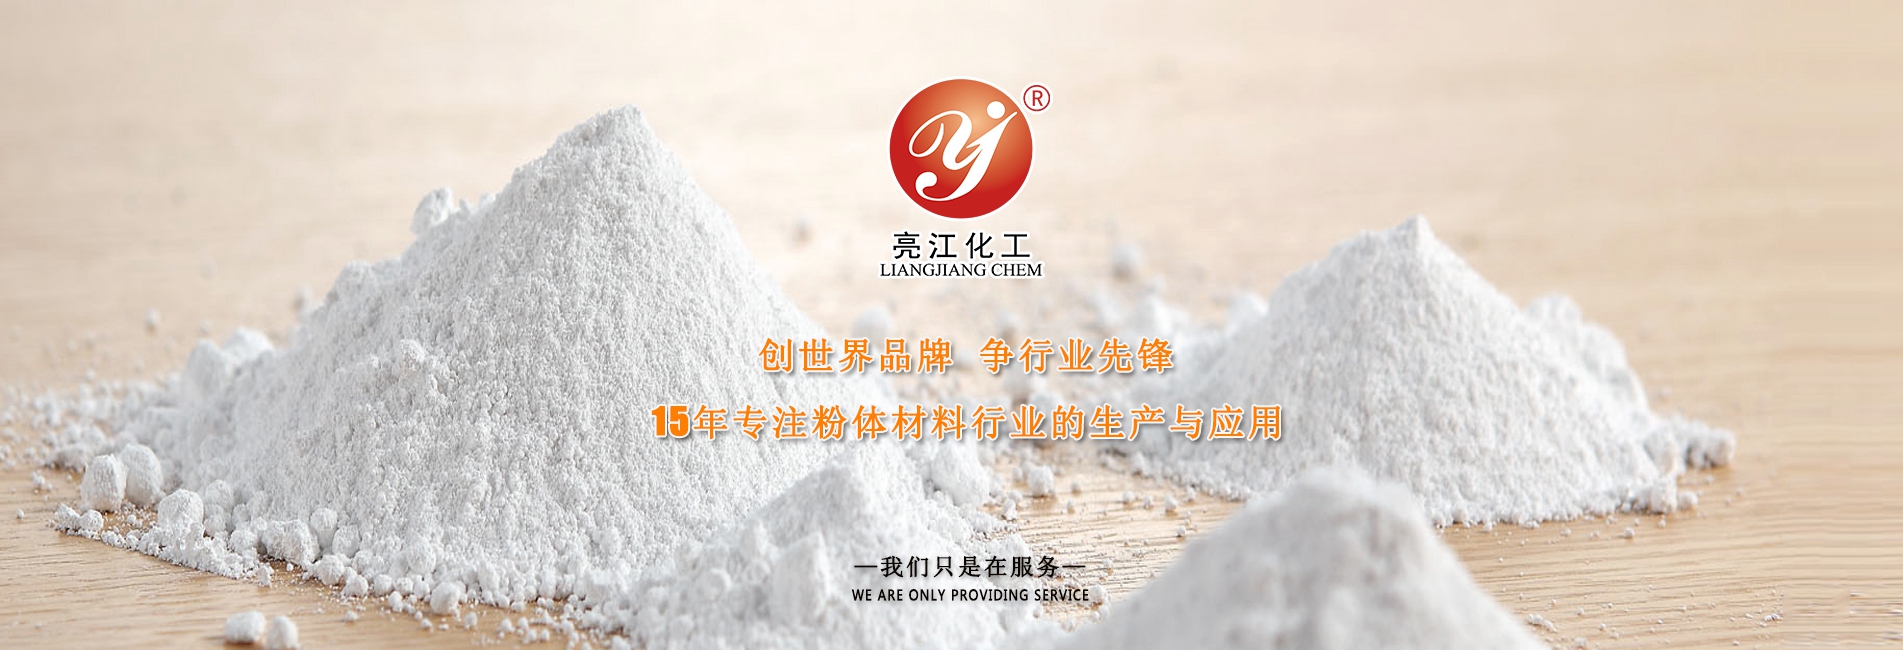 上海亮江钛白化工制品有限公司公司介绍